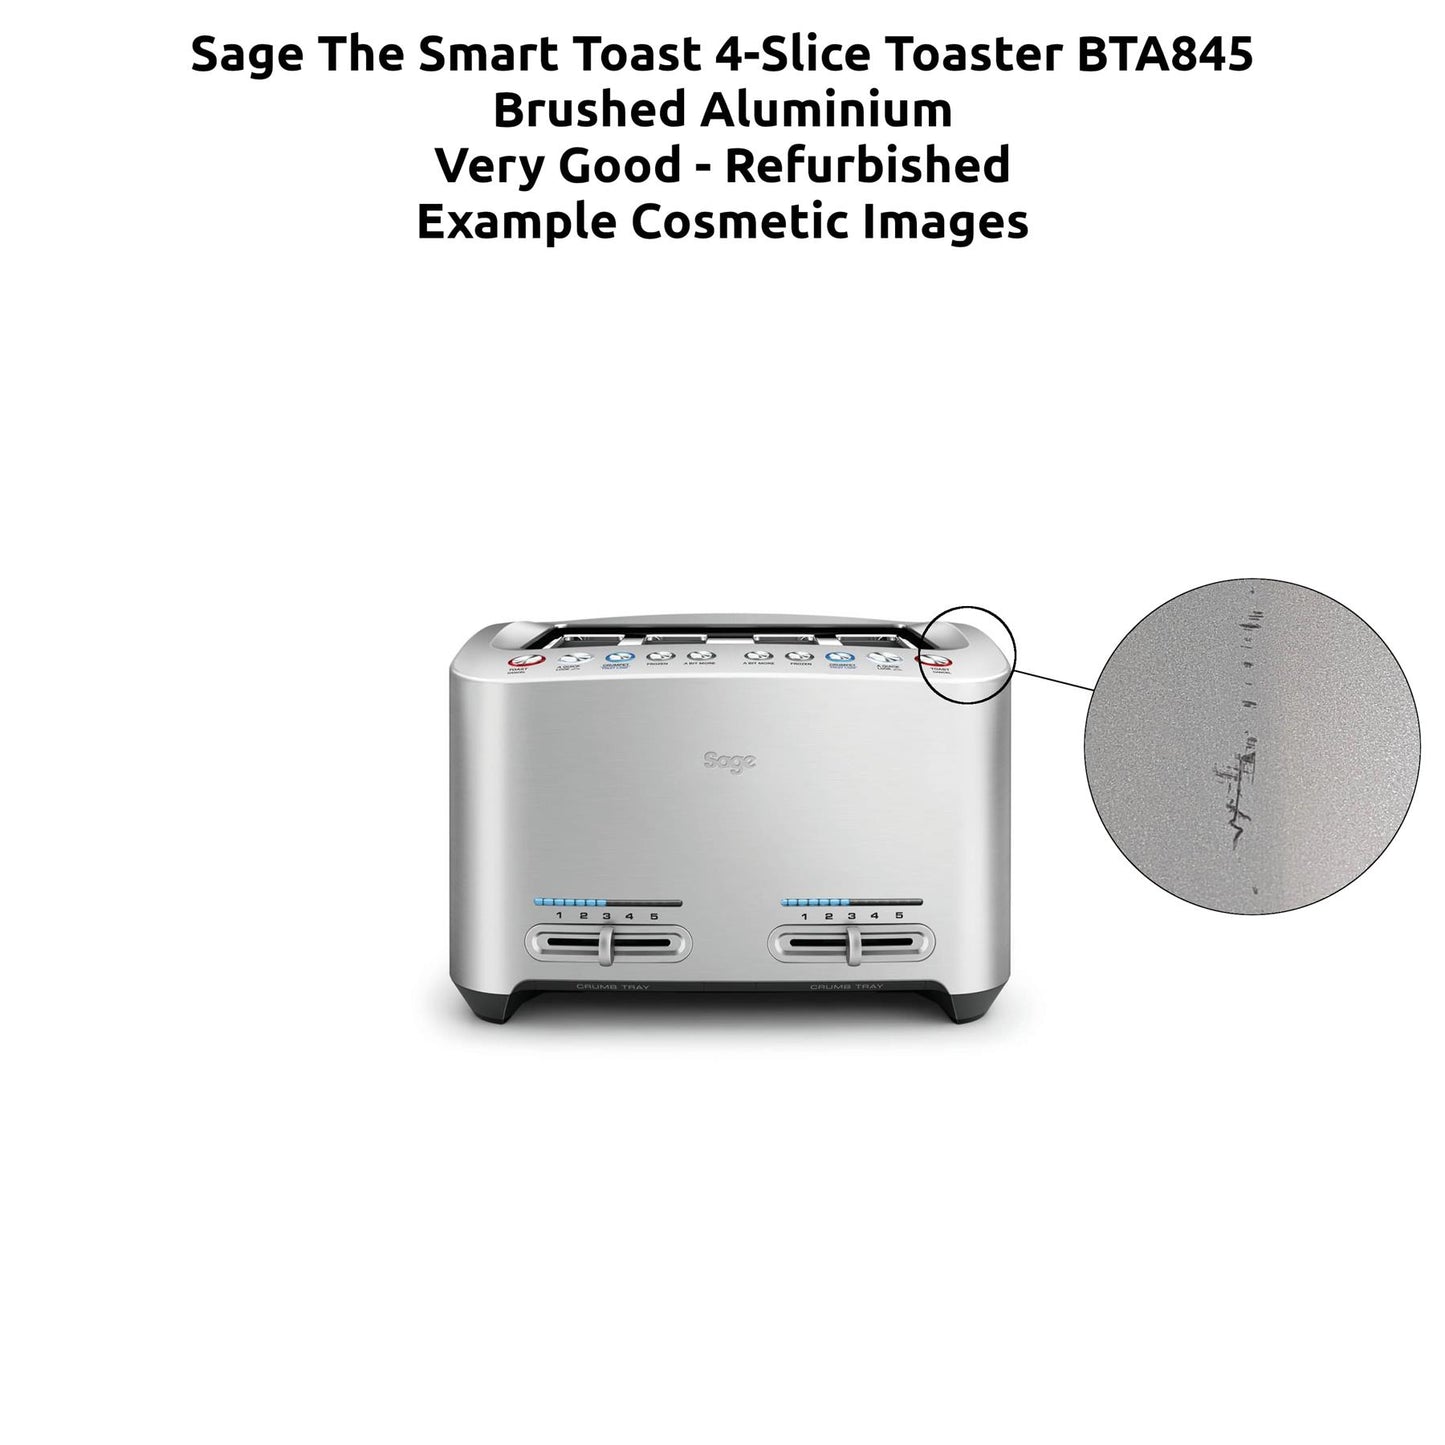 Sage The Smart Toast 4-Slice Toaster BTA845